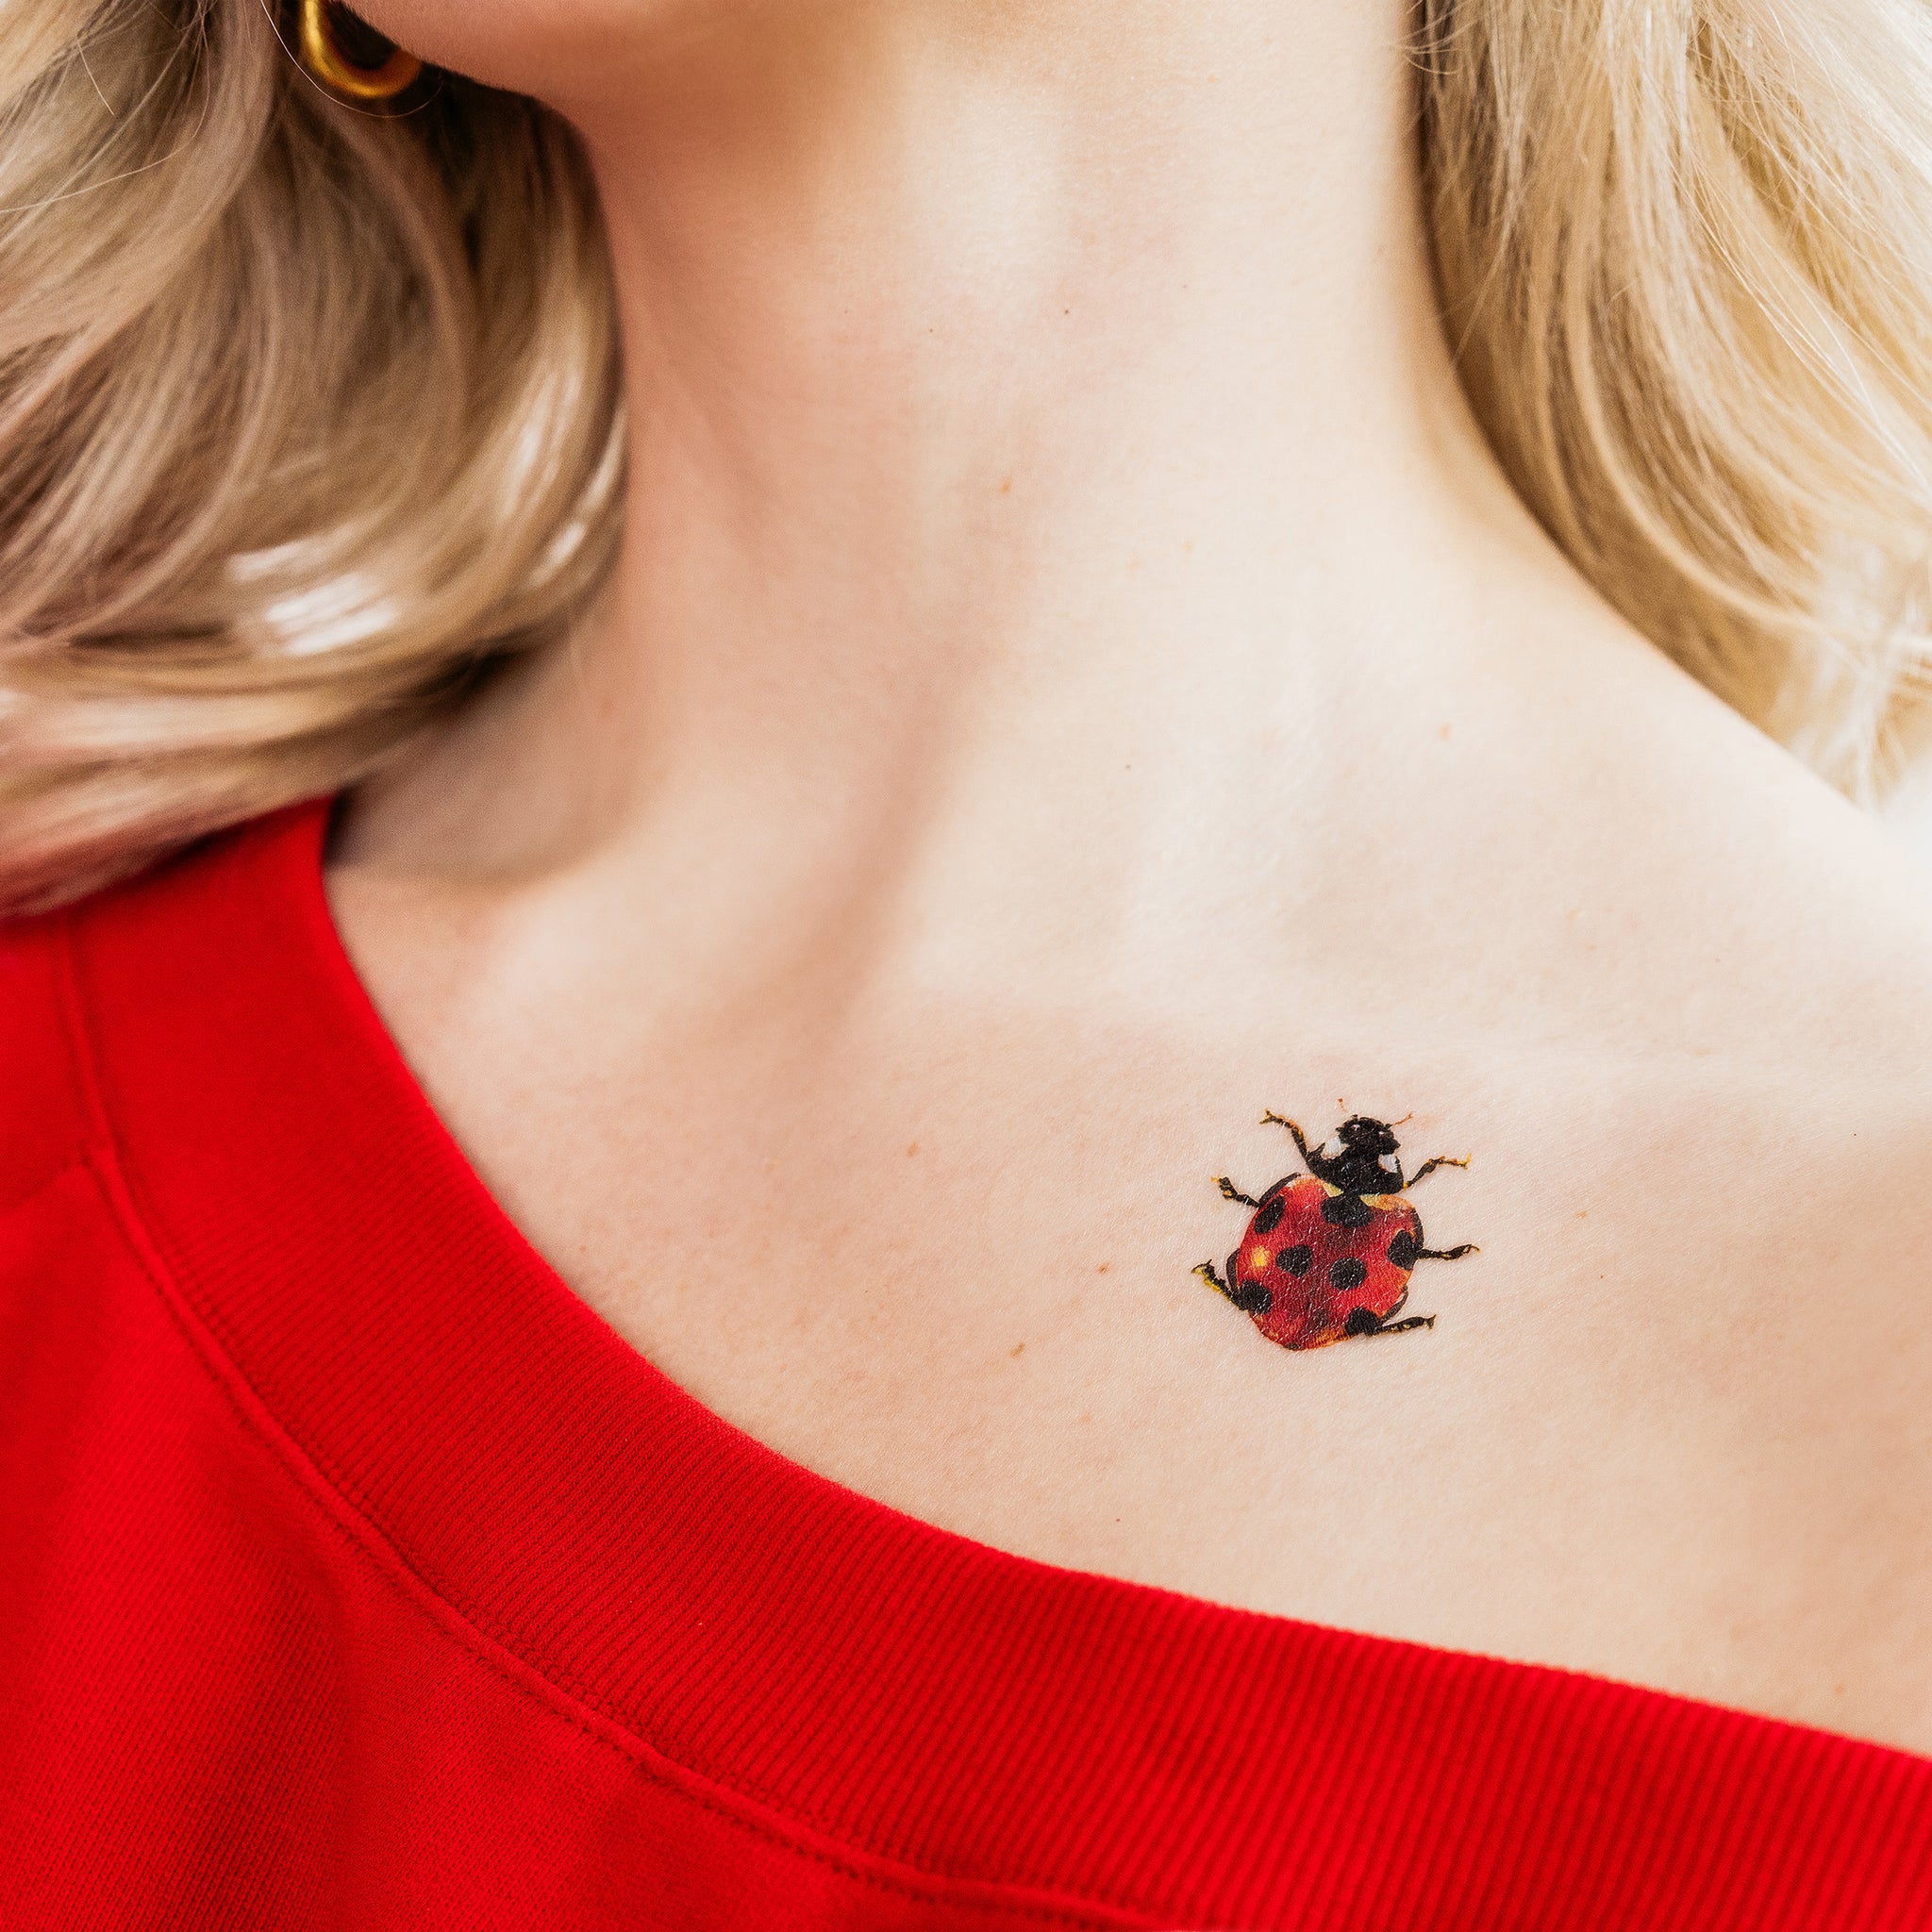 Ladybug Tattoo Ideas | TattoosAI